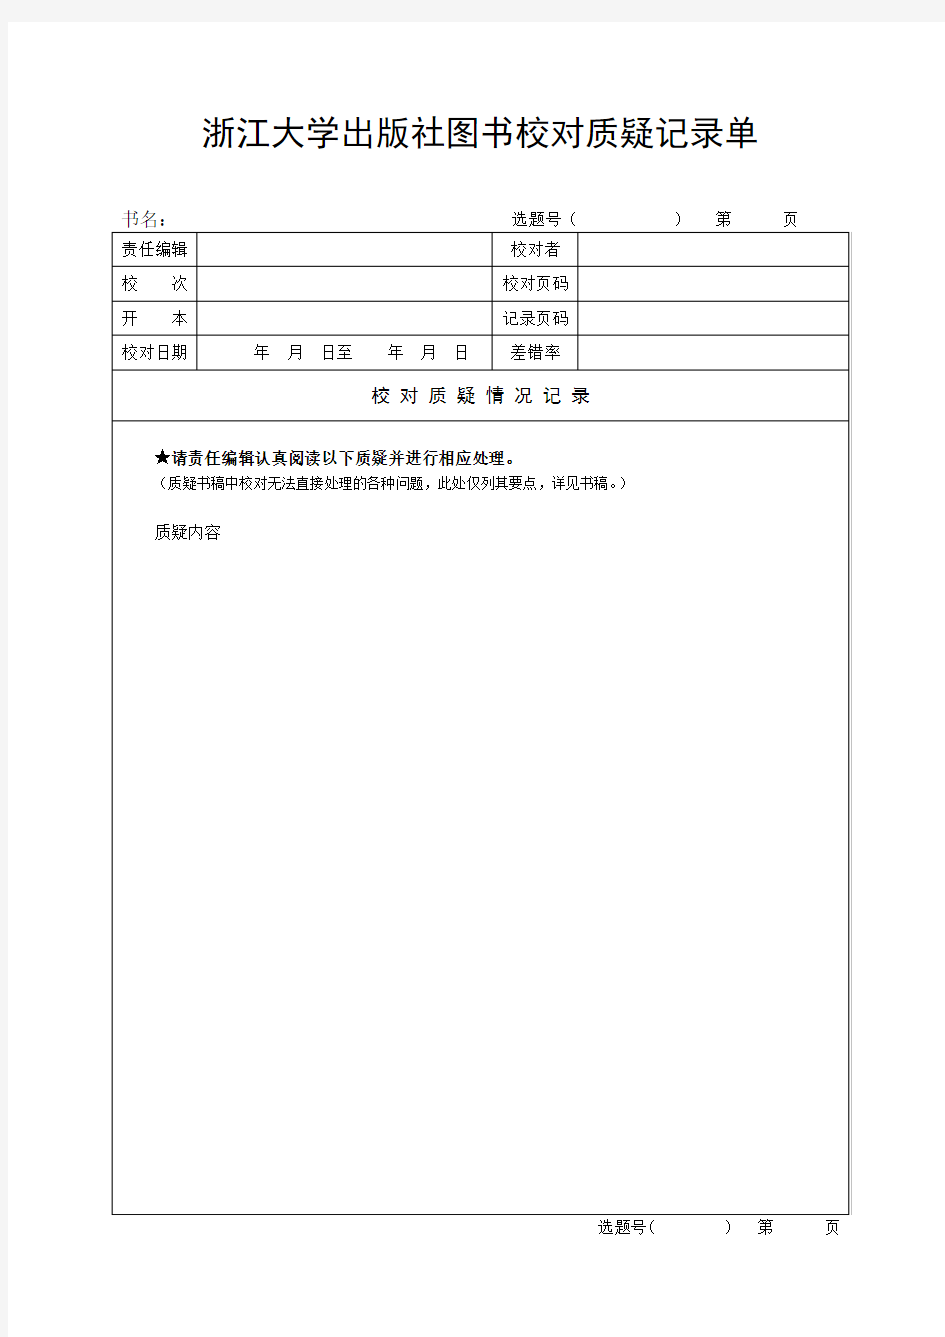 浙江大学出版社图书校对质疑记录单